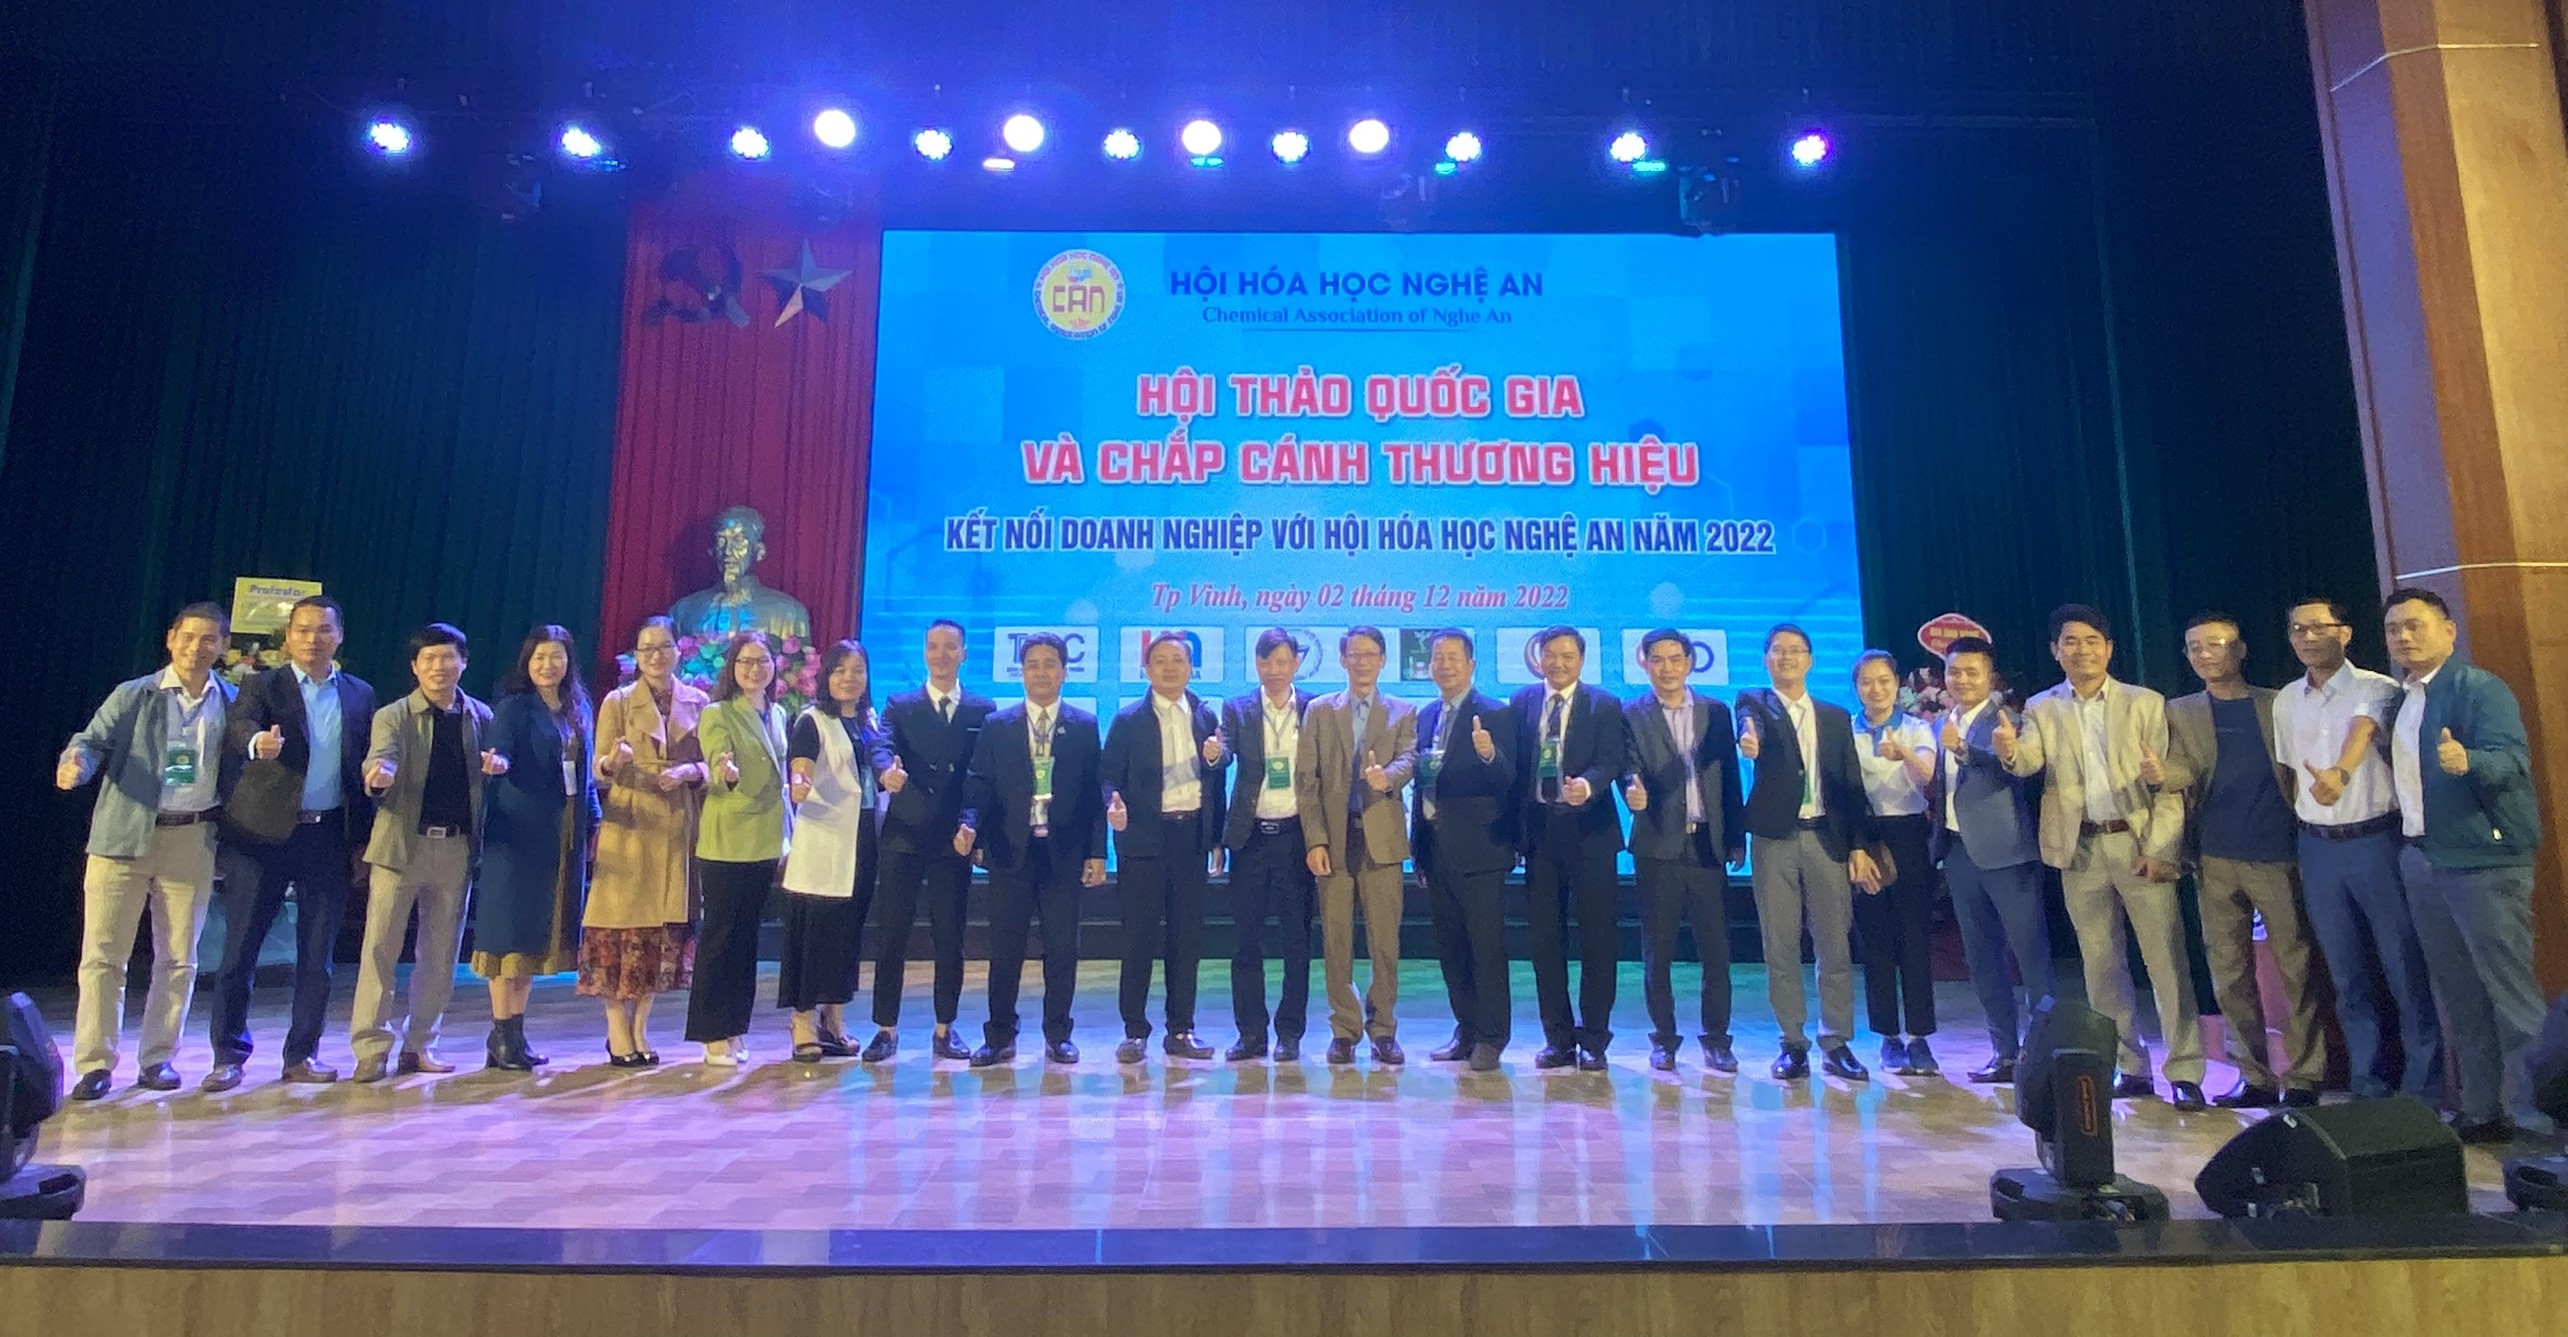 TQC vinh hạnh tham dự Hội thảo Quốc Gia và chắp cánh thương hiệu Kết nối doanh nghiệp với Hội Hoá học Nghệ An năm 2022